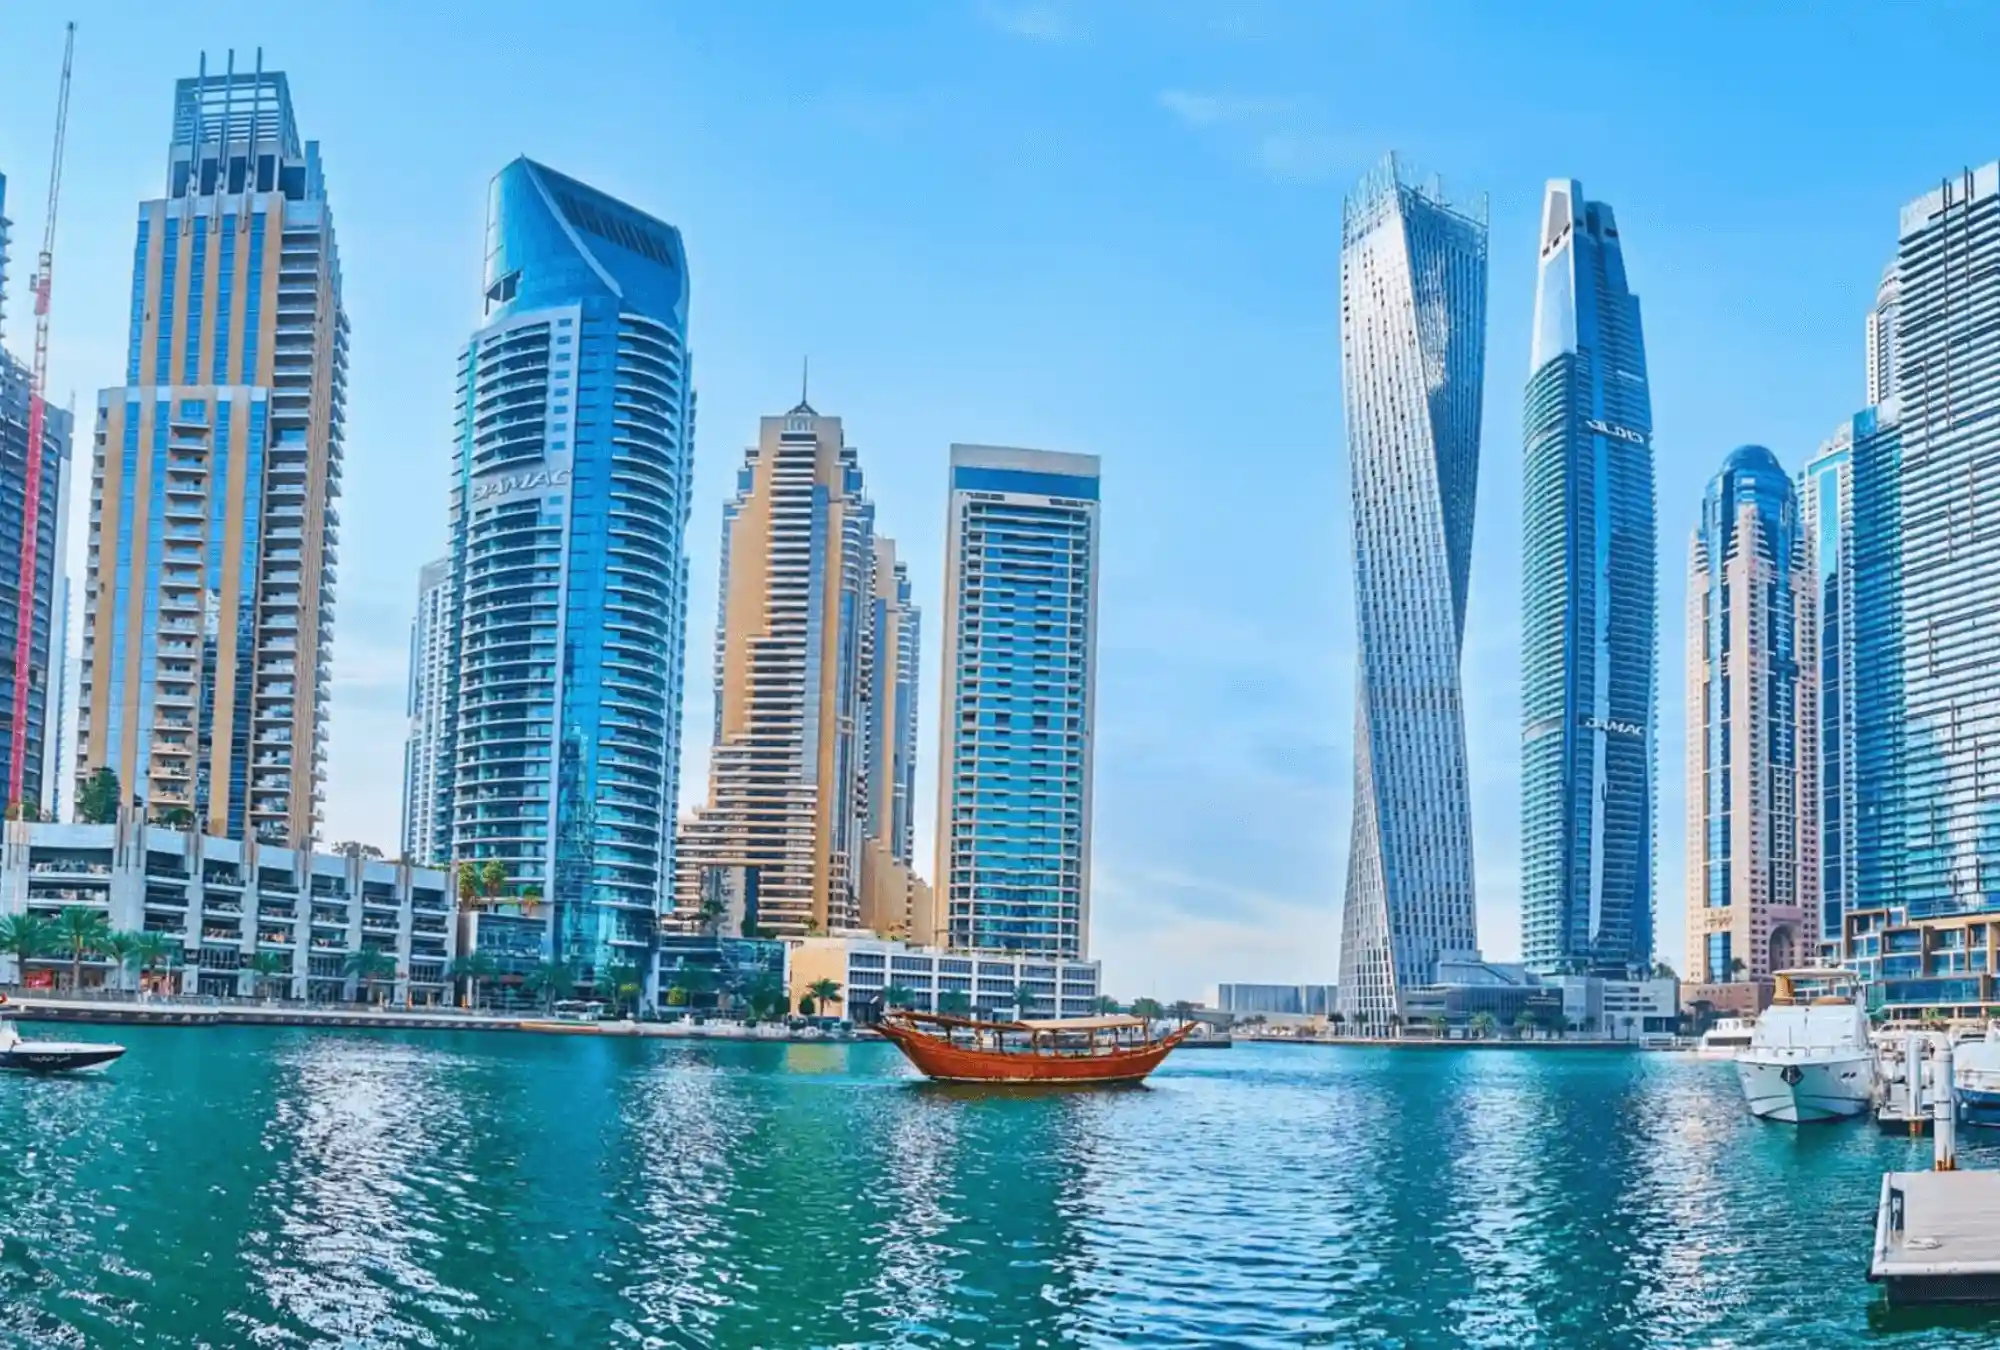 दुबई मरीना में बिक्री के लिए संपत्तियाँ